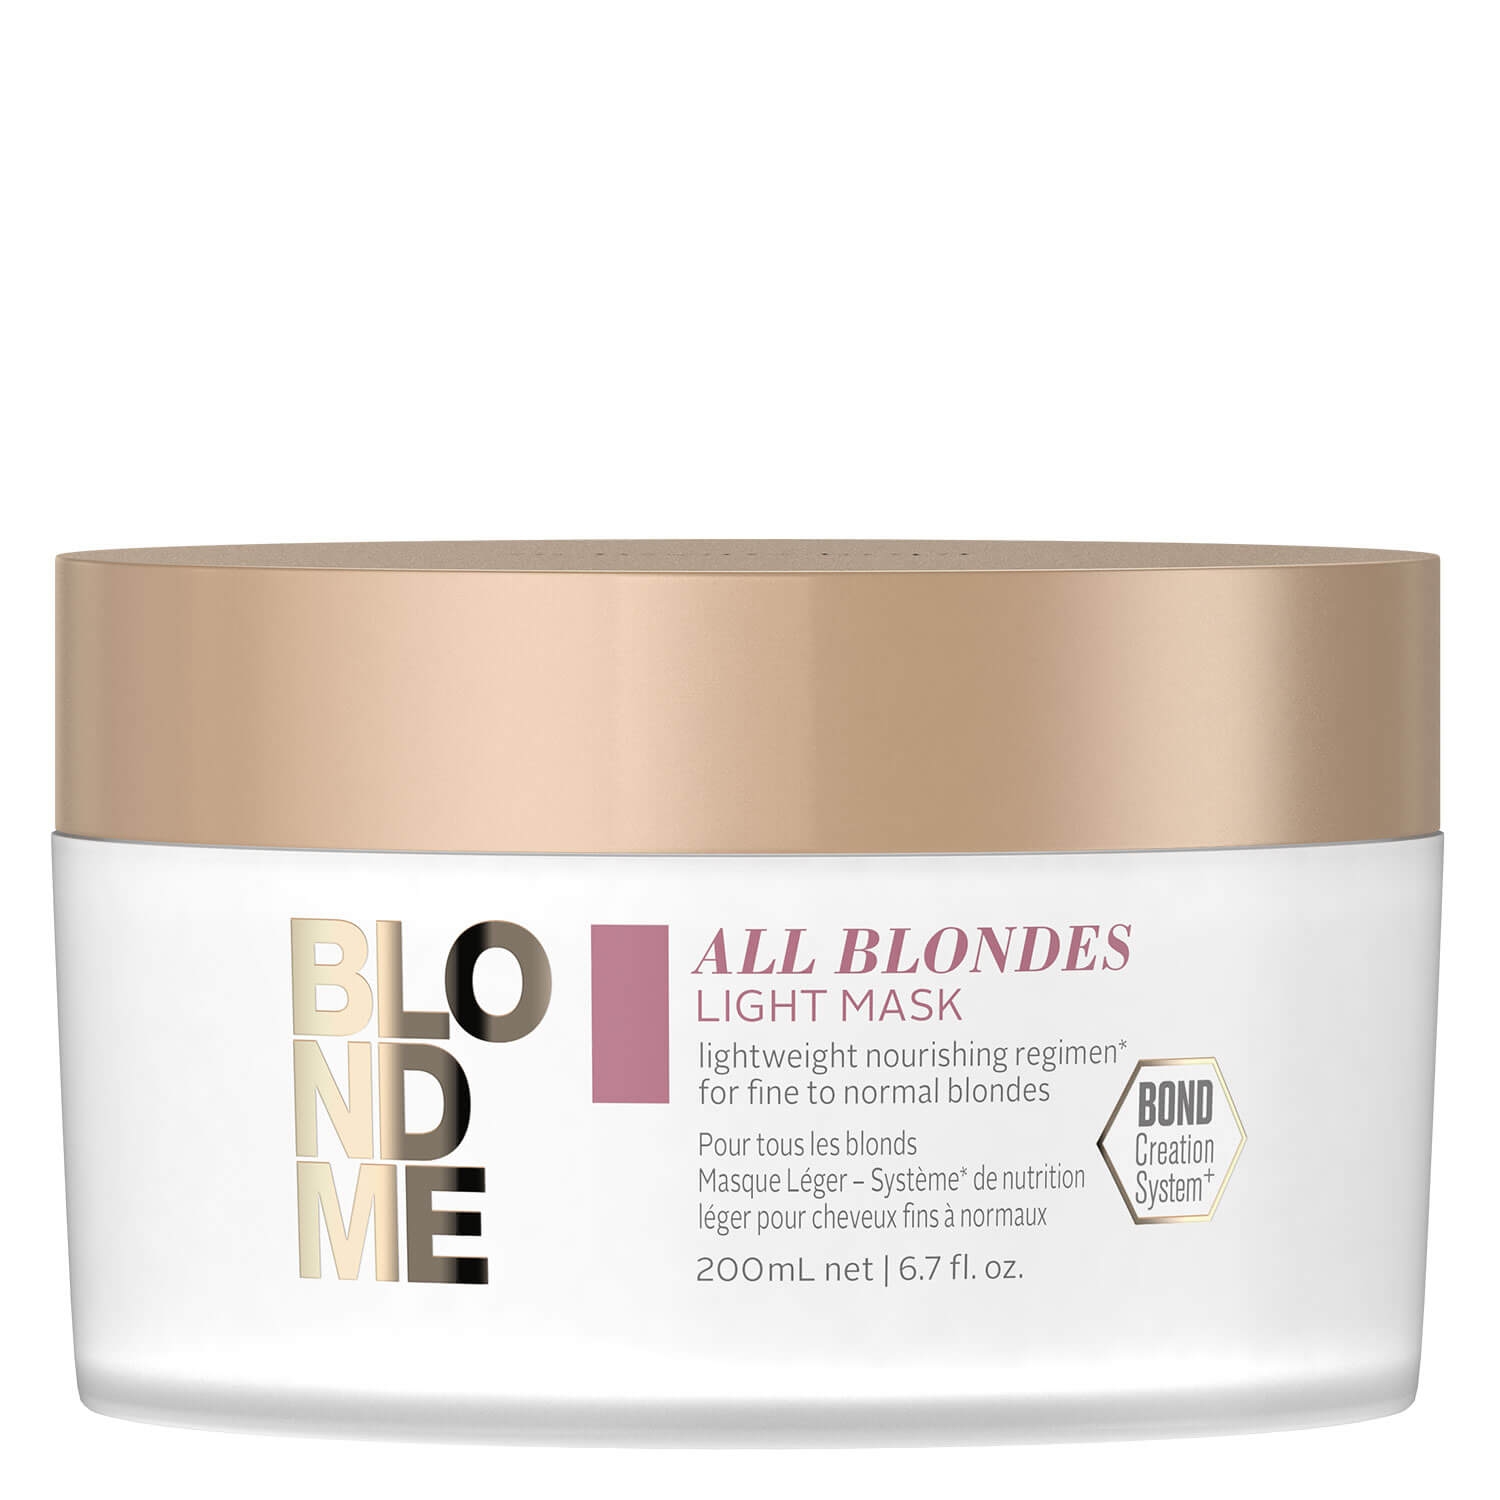 Produktbild von Blondme - All Blondes Light Mask